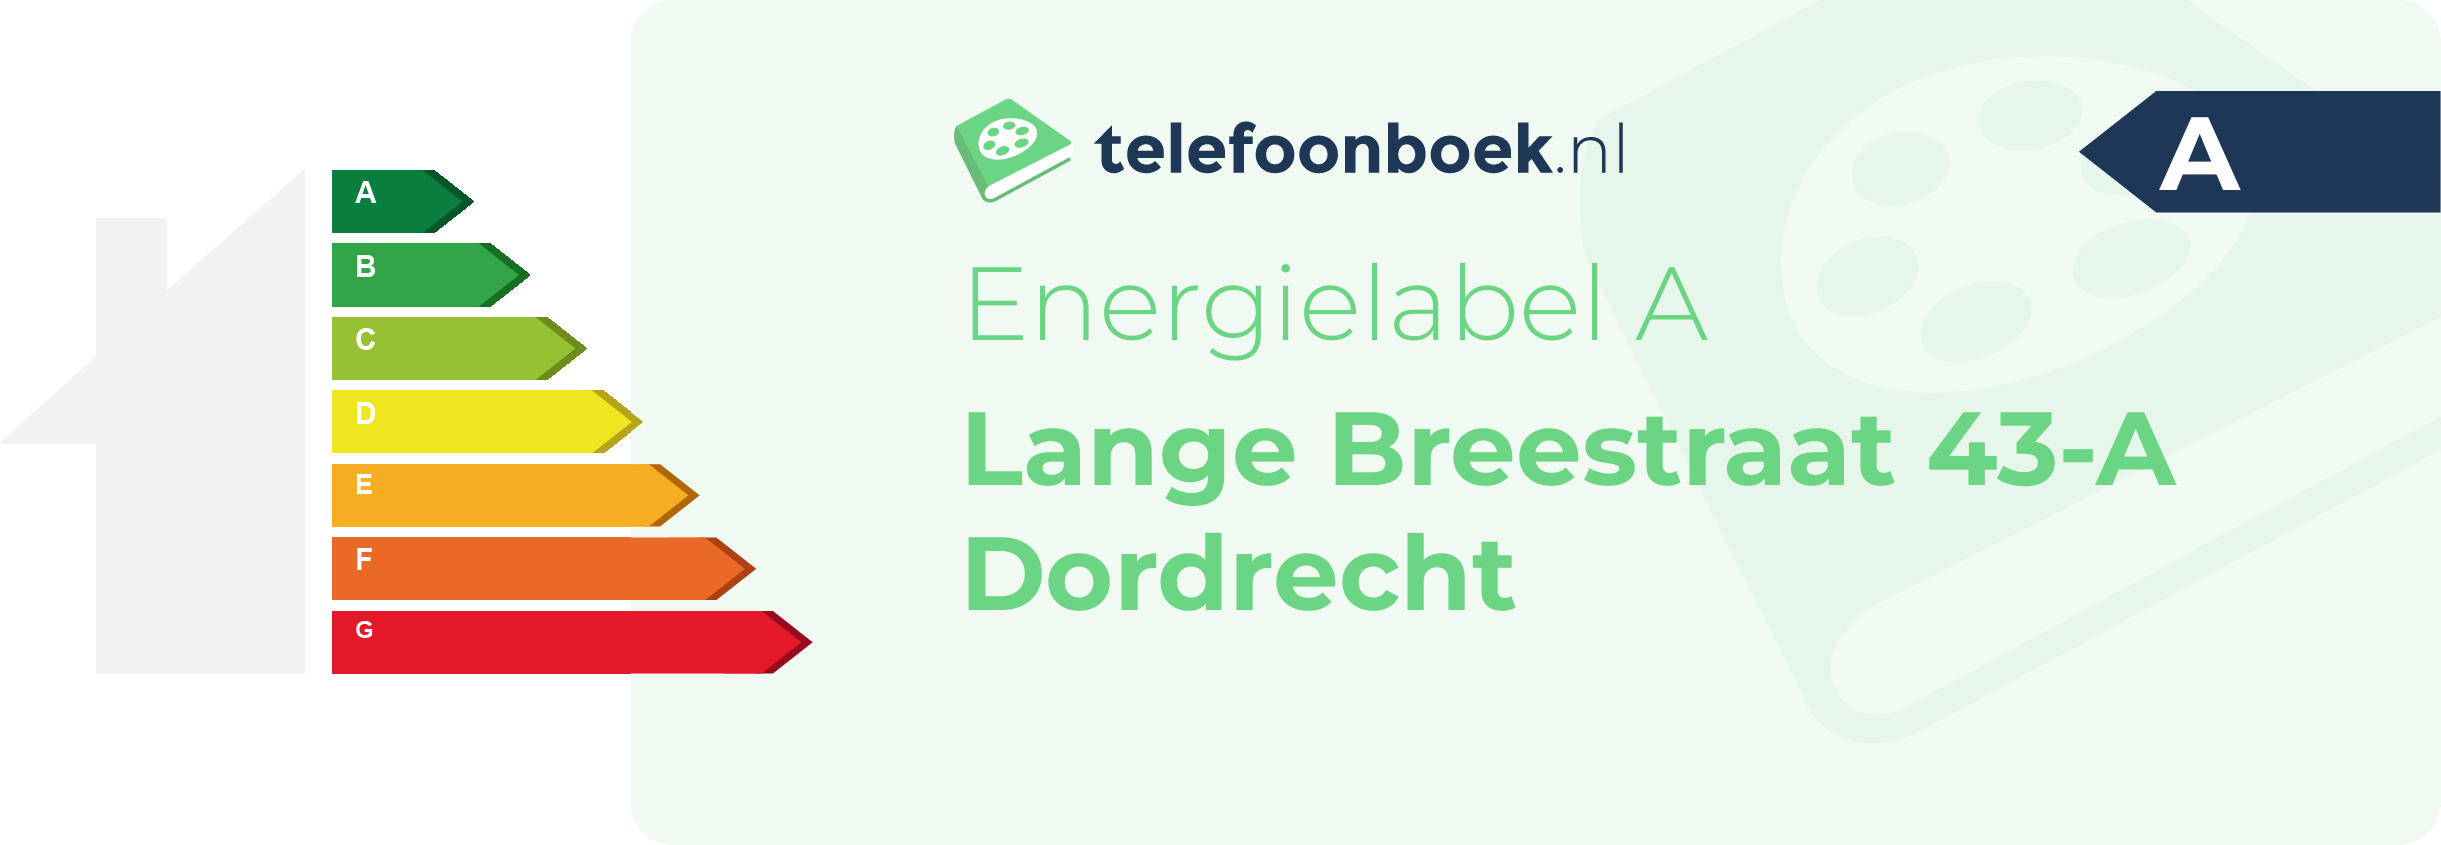 Energielabel Lange Breestraat 43-A Dordrecht